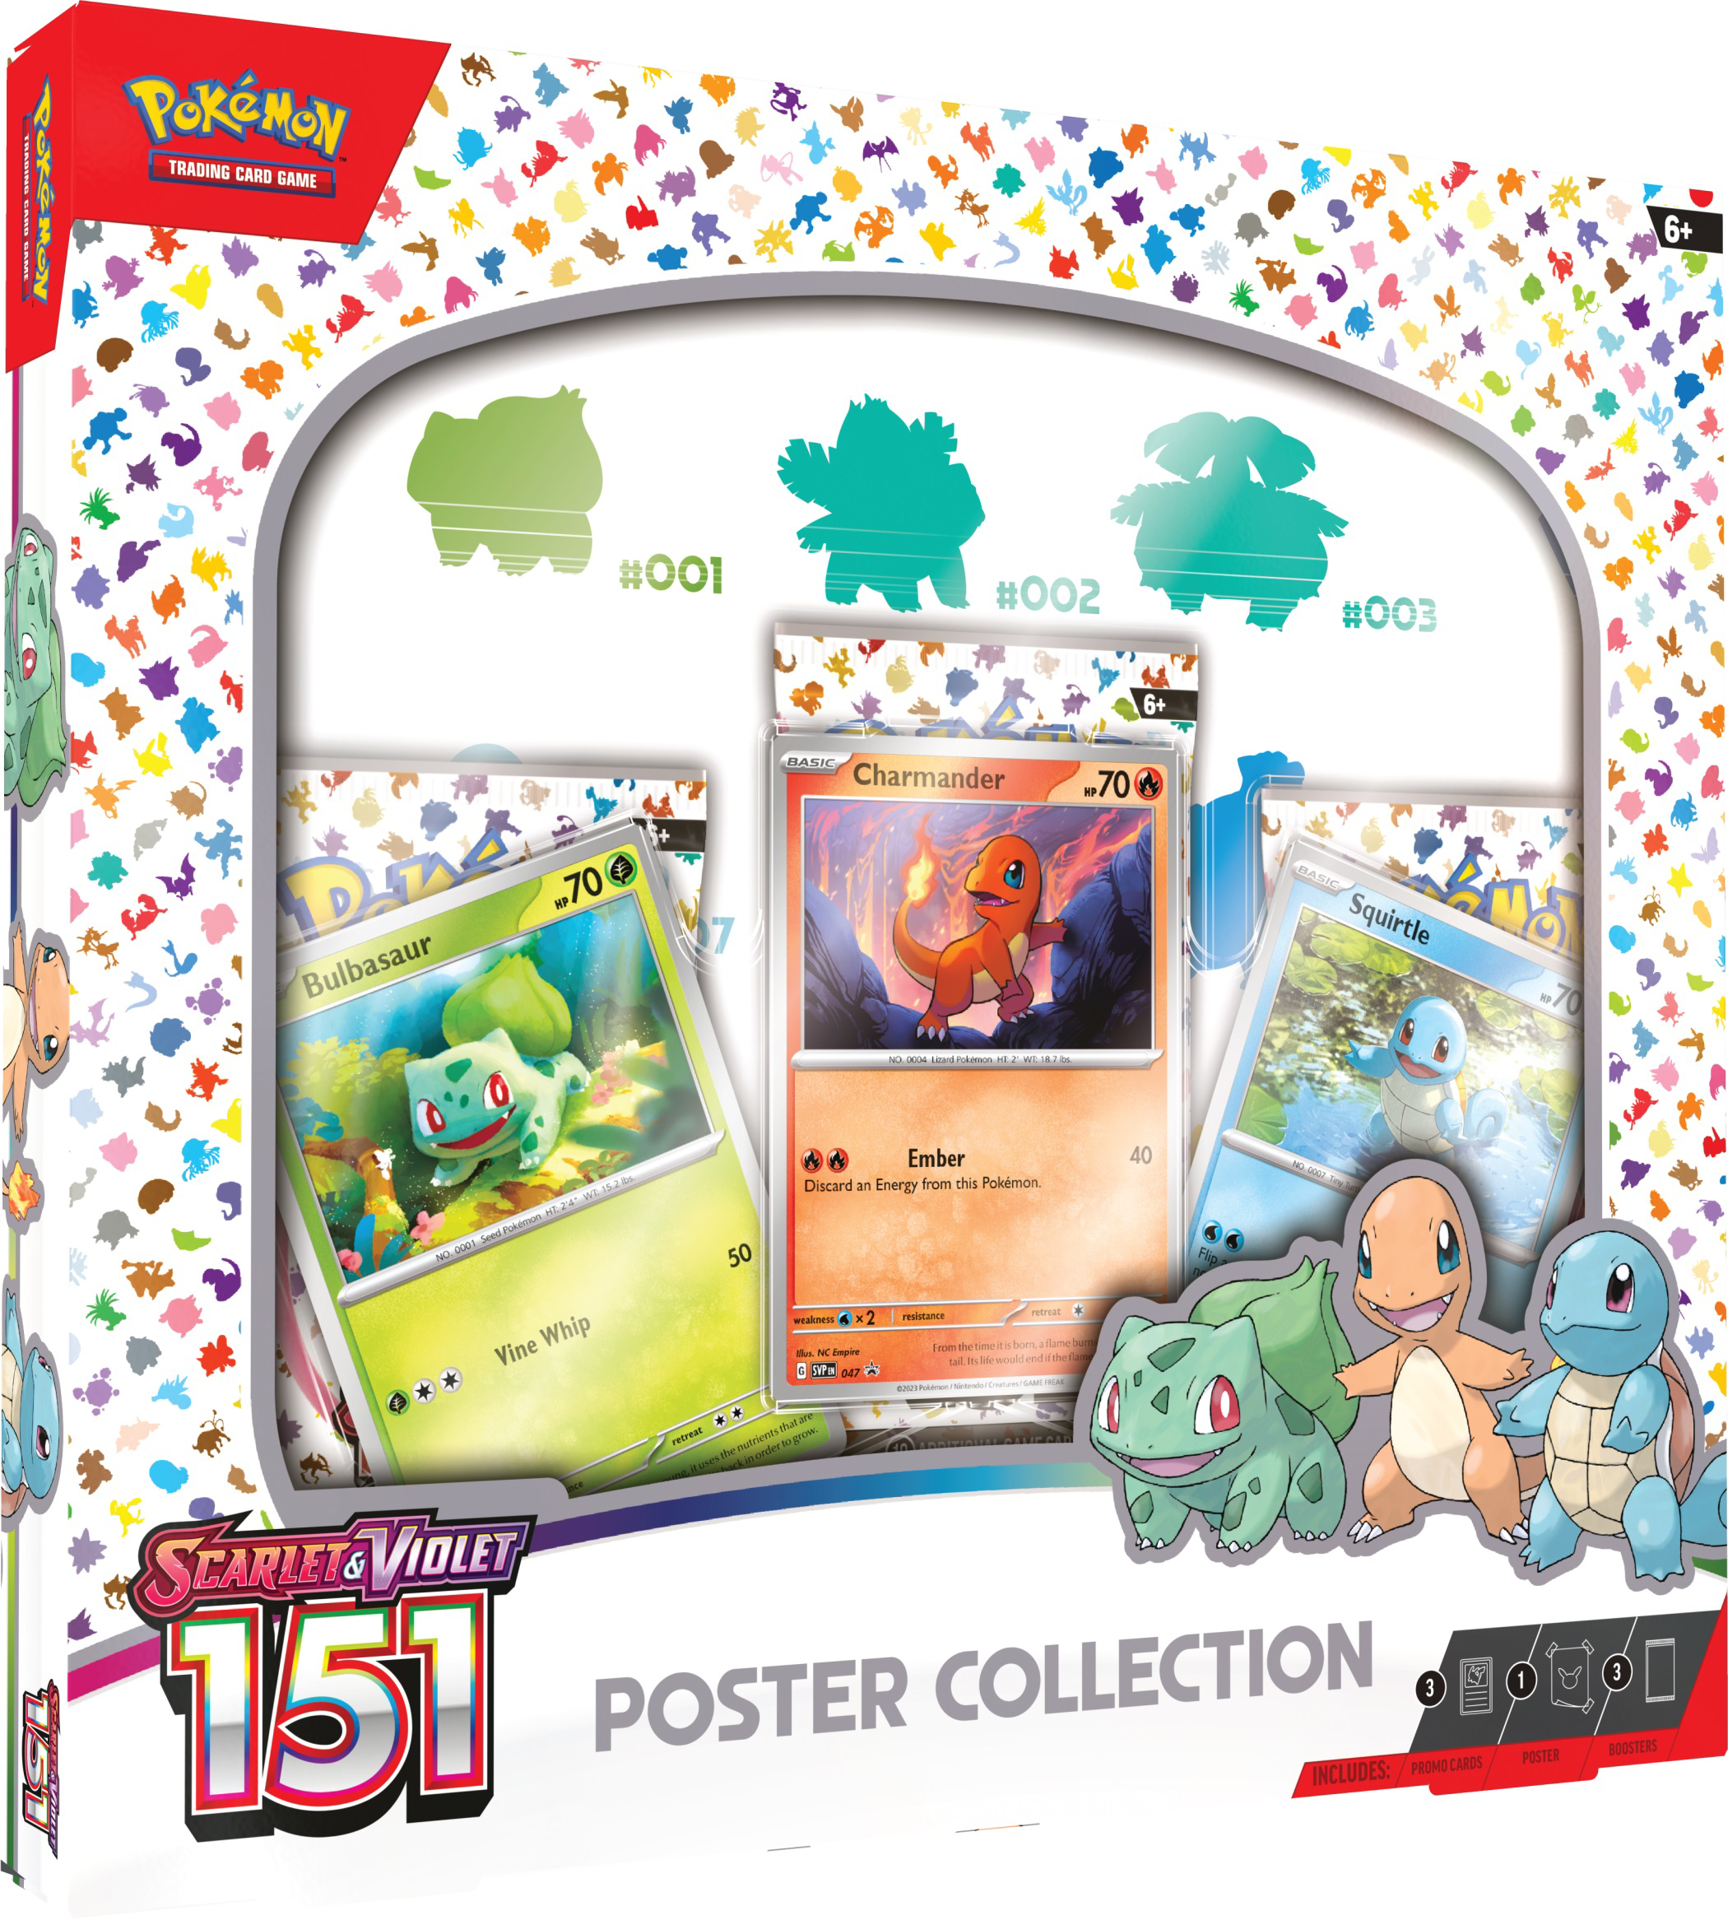 Pokémon JCC : Collection poster Écarlate et Violet - 151 EN